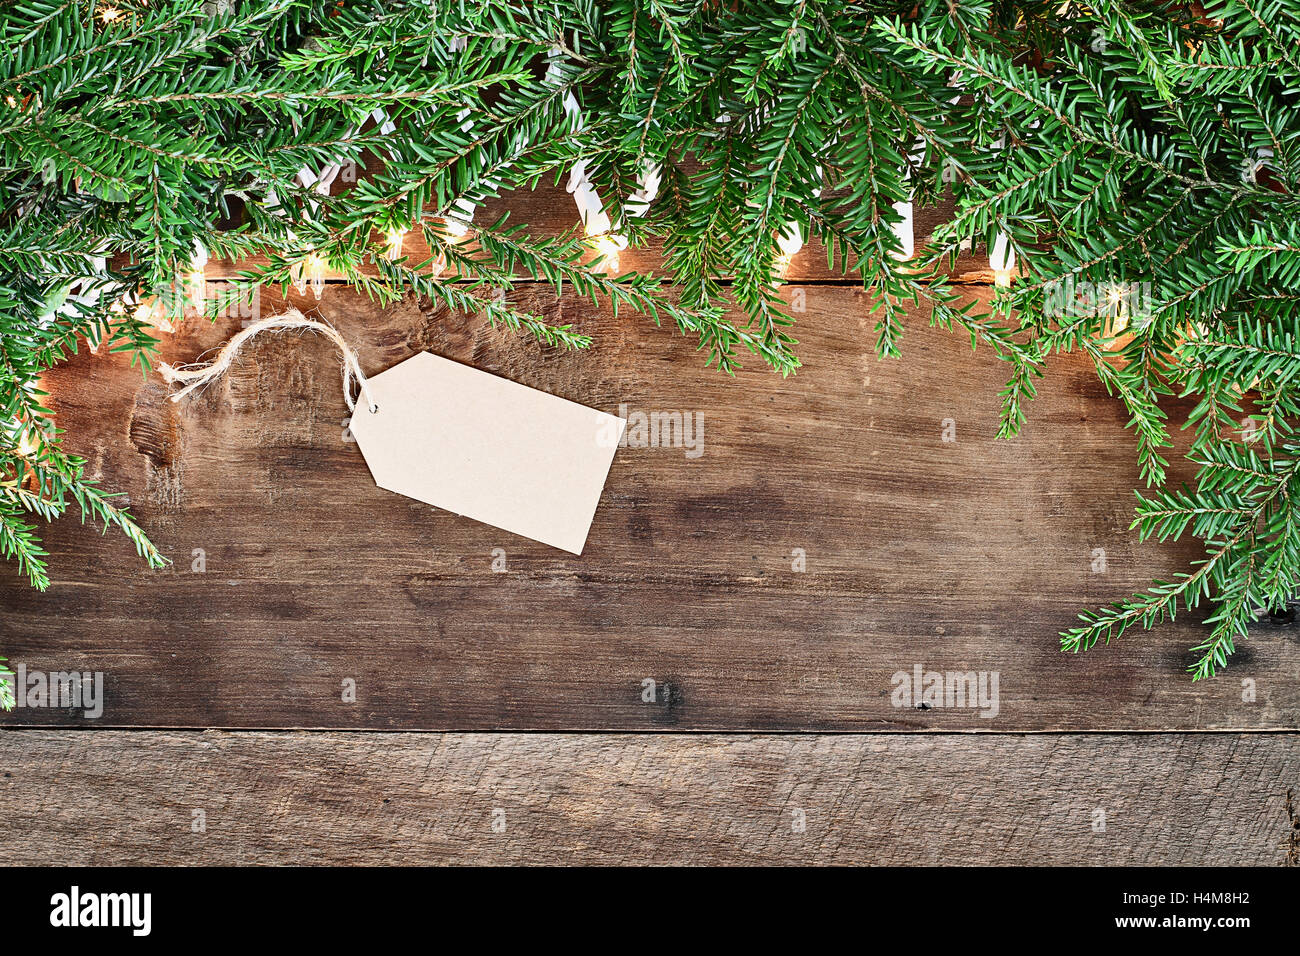 Arbre de Noël des branches de pins, carte vierge et des lumières décoratives sur un fond rustique en bois de grange. Droit coup de frais généraux. Banque D'Images